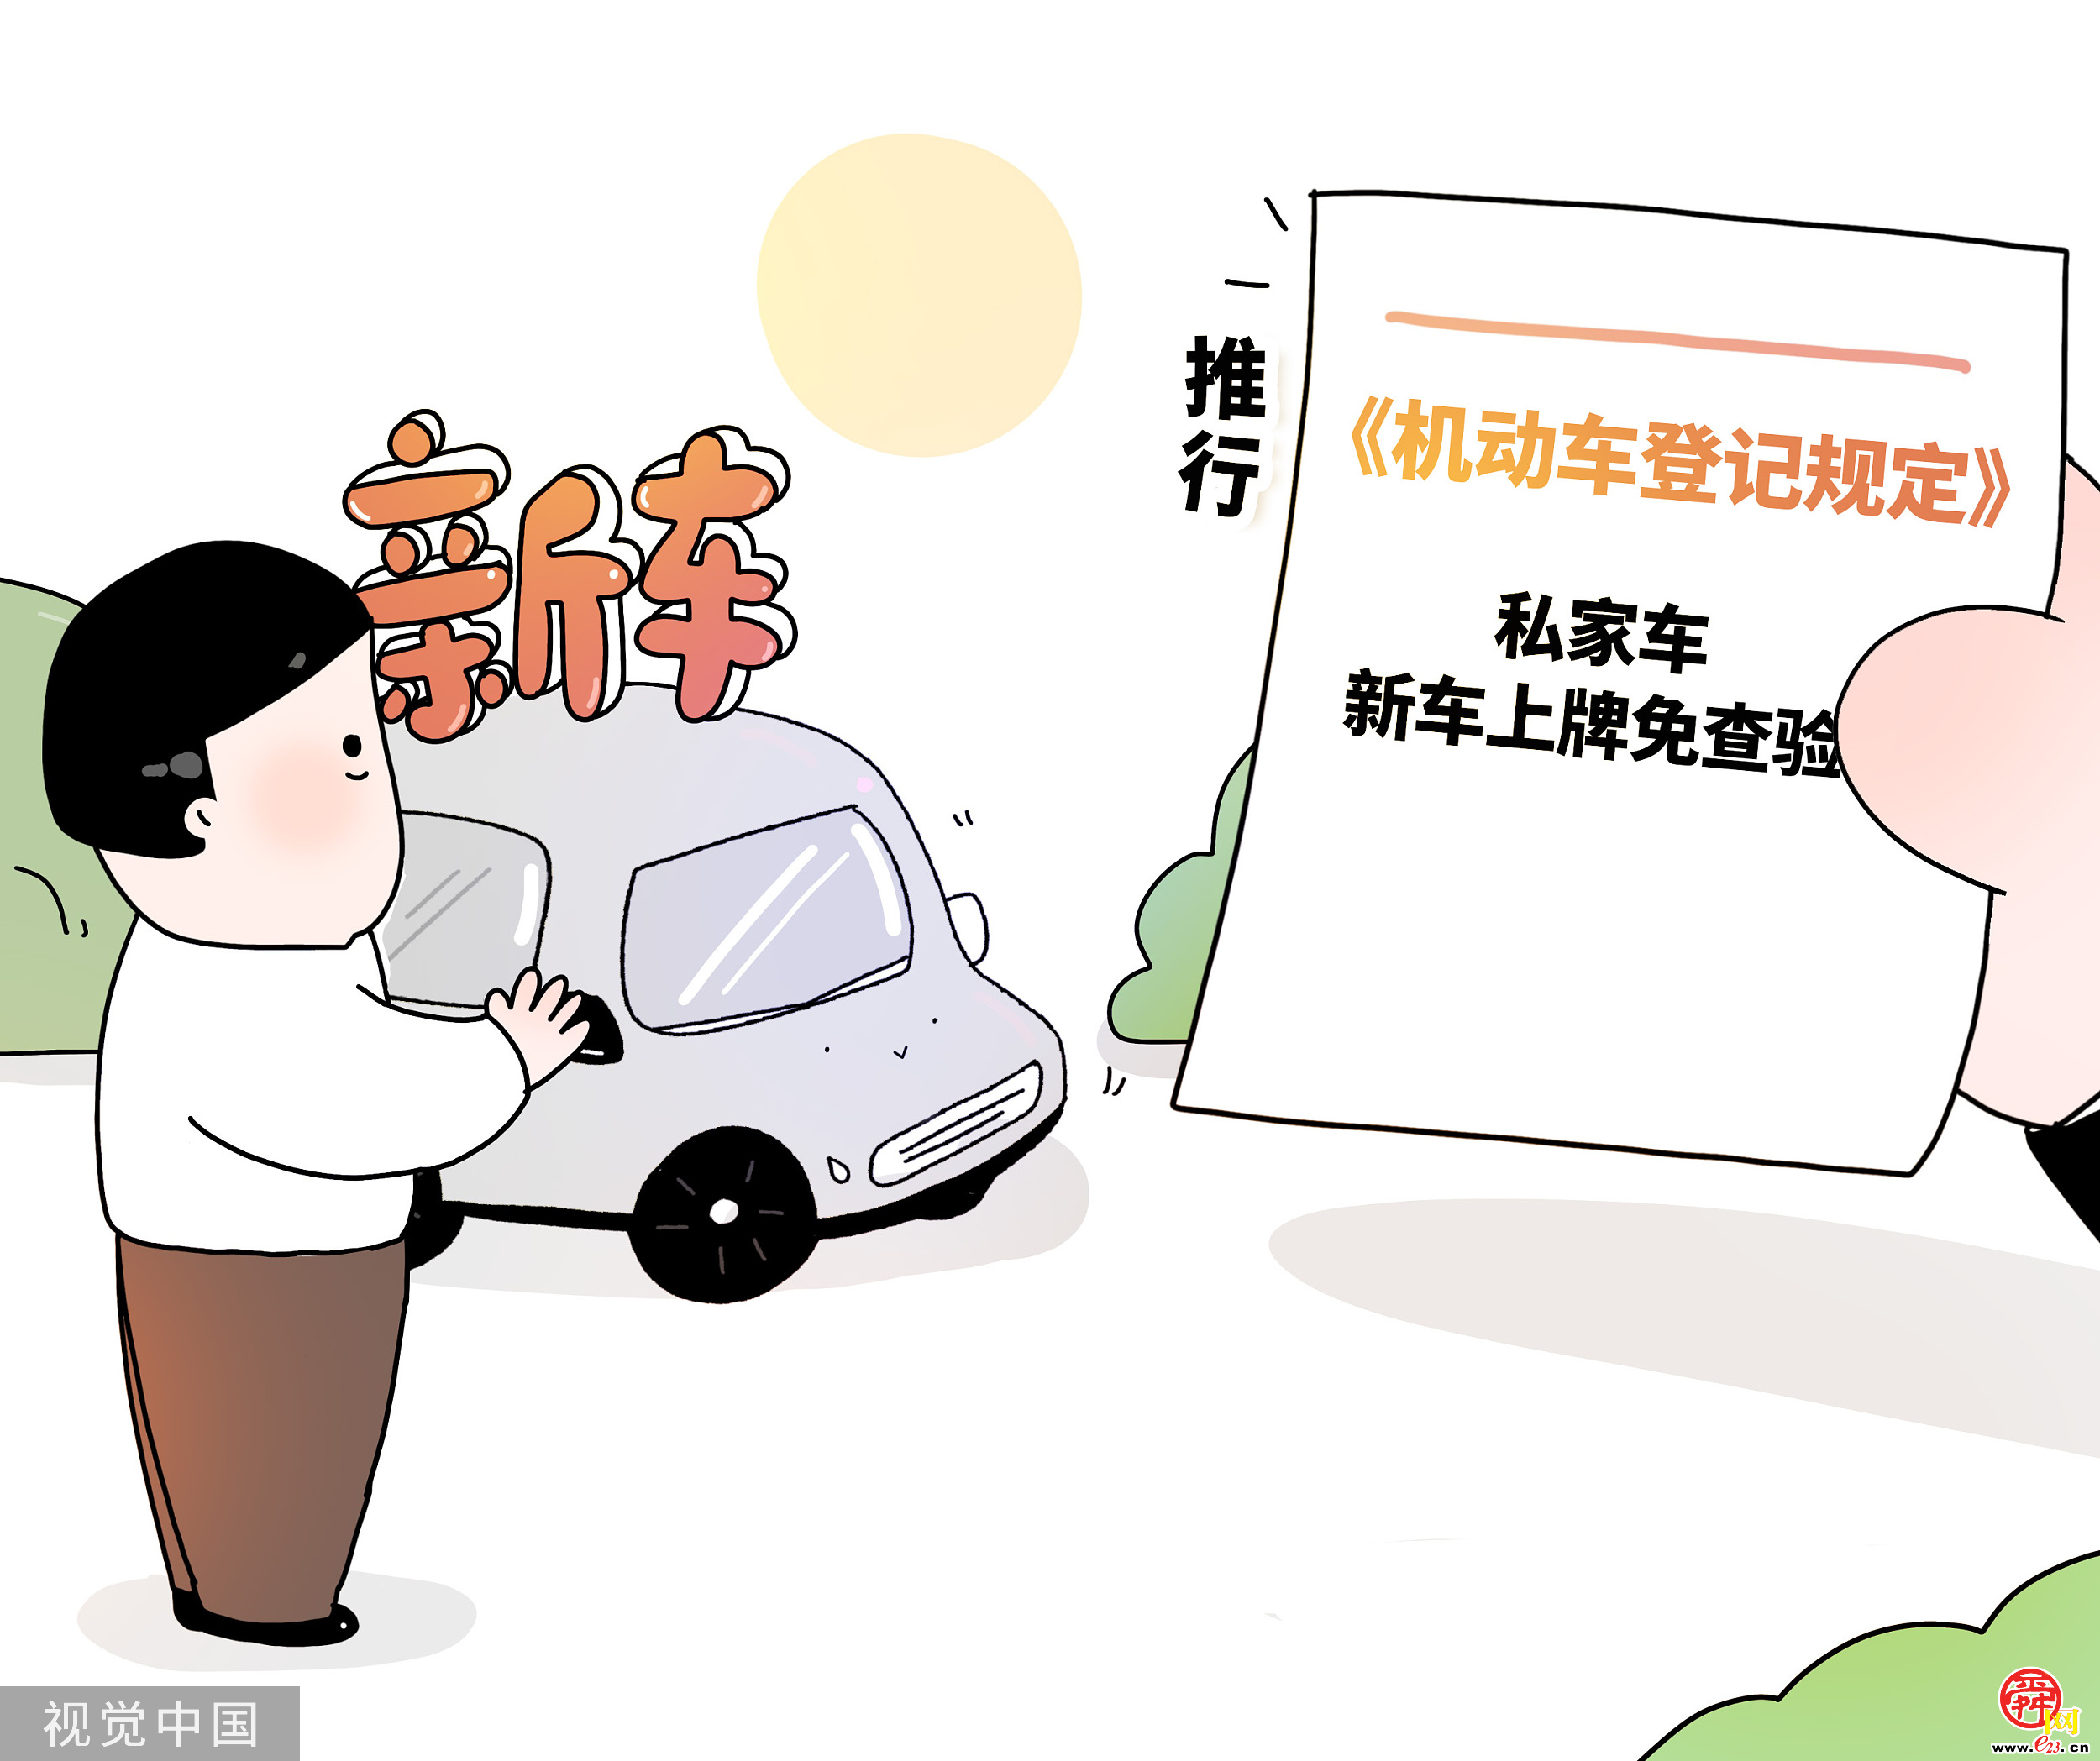 济南发布11项交管便民服务新措施 私家小客车上牌免查验今起实施